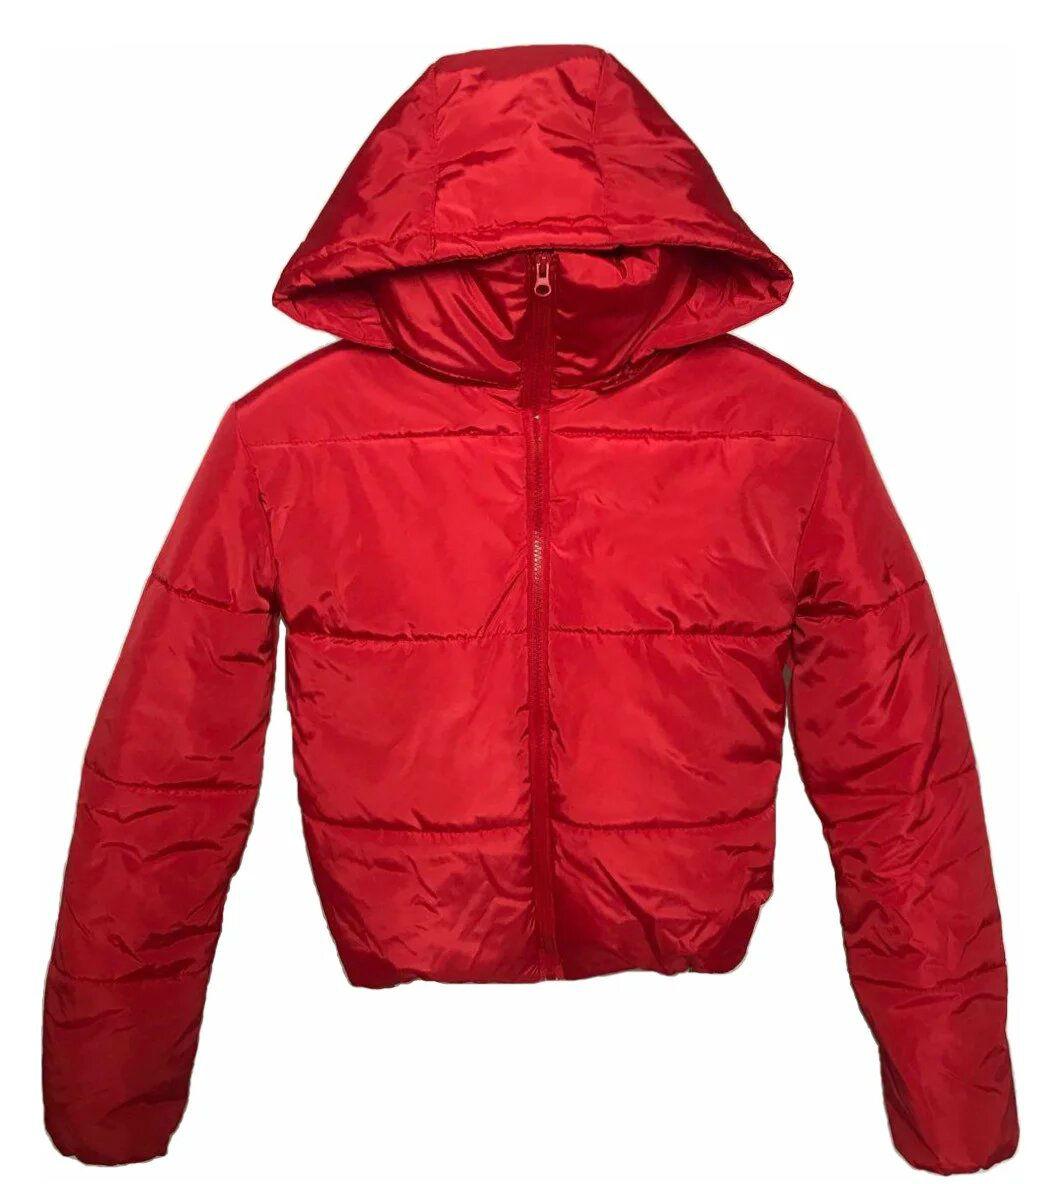 Коротка молодіжна куртка з капюшоном, осінь/зима розміри 42